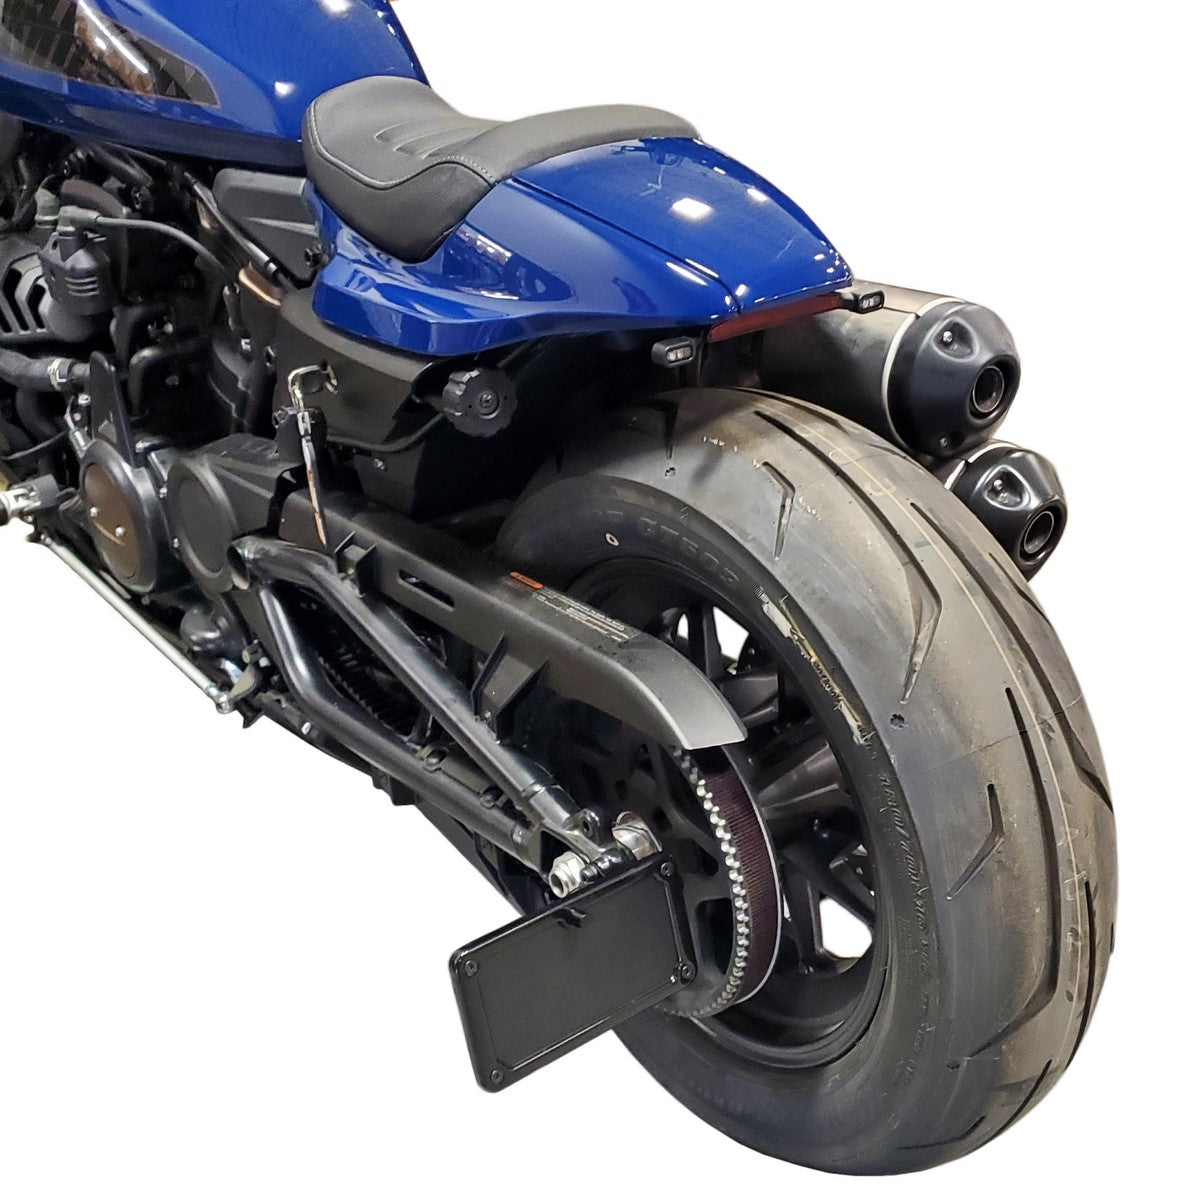 Motorcycle Side-Mount License Plate Frame Holder Bracket Fits for